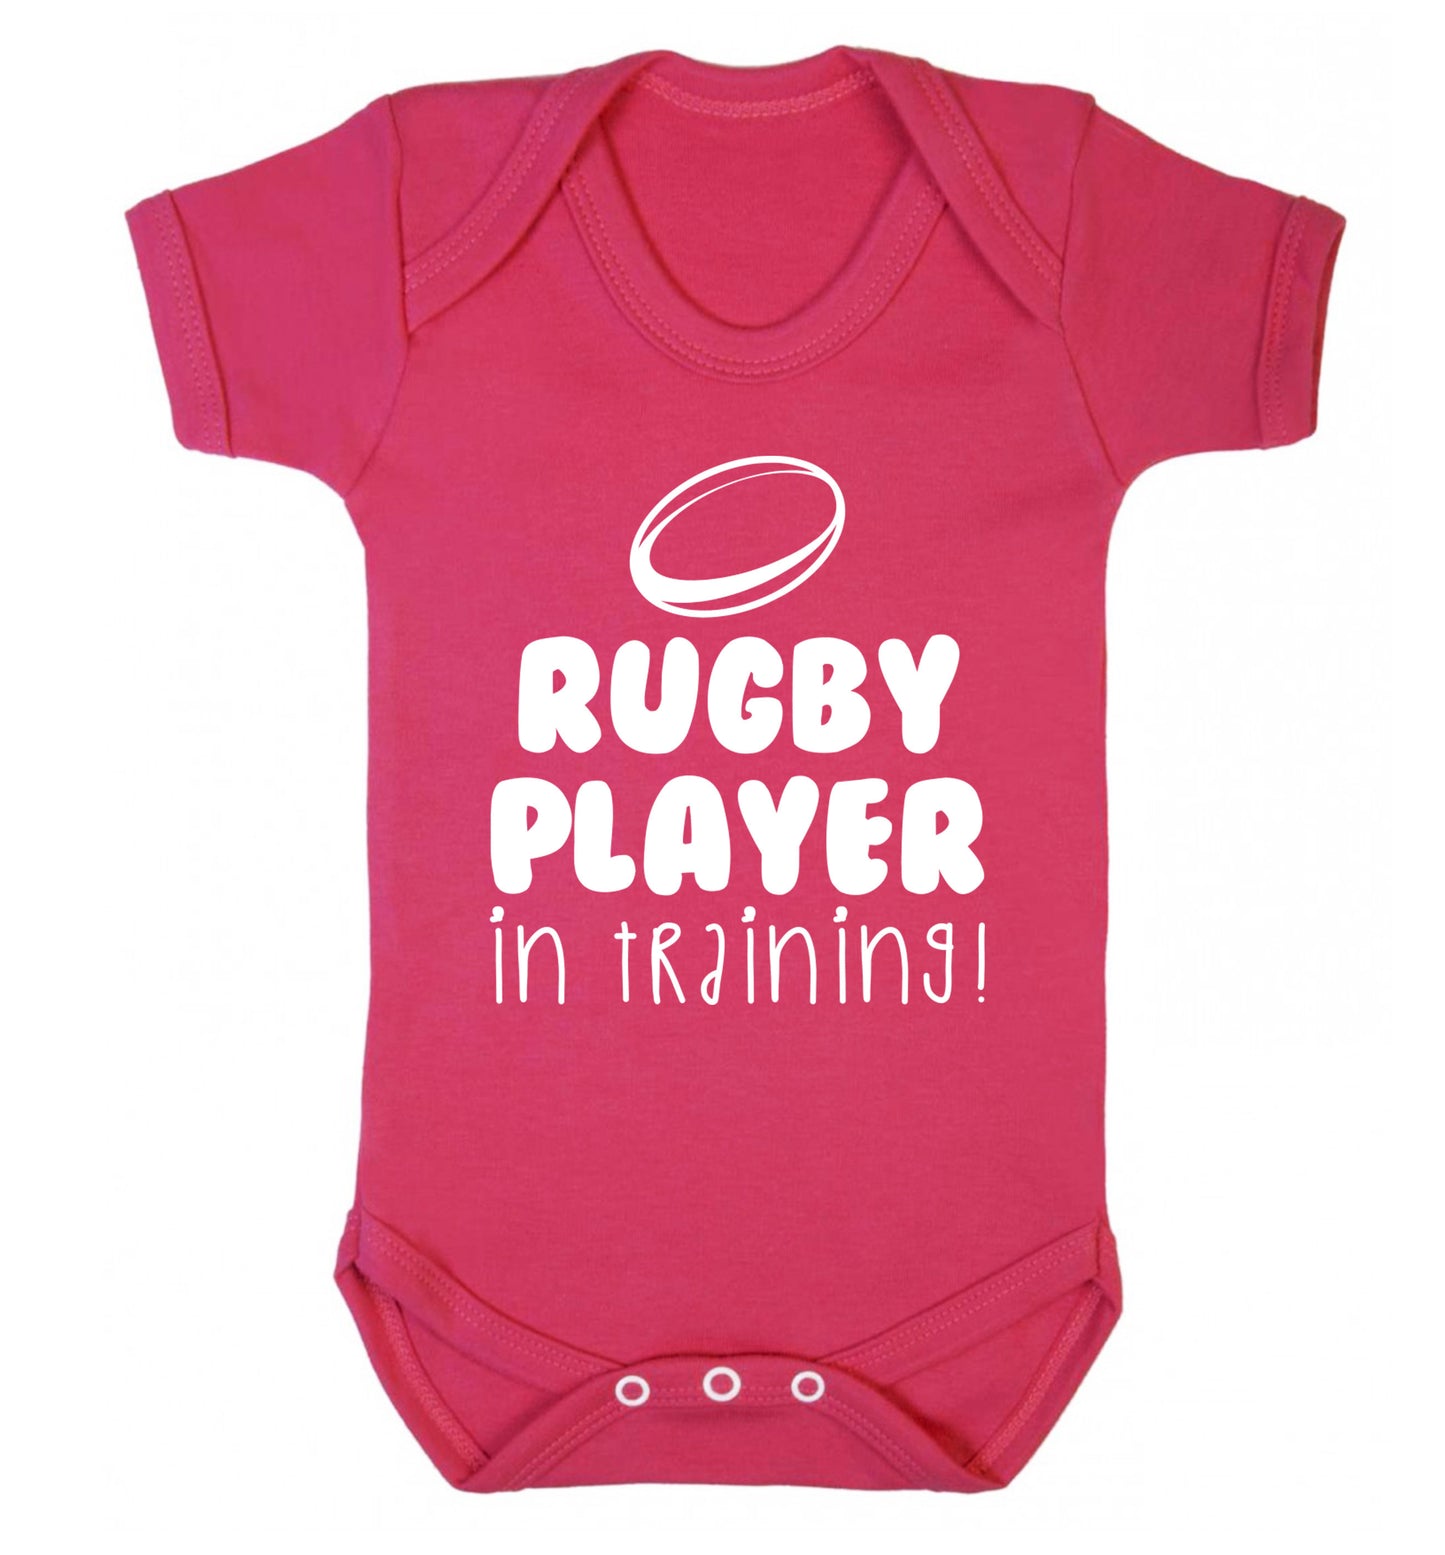 Rugby player in training Baby Vest dark pink 18-24 months